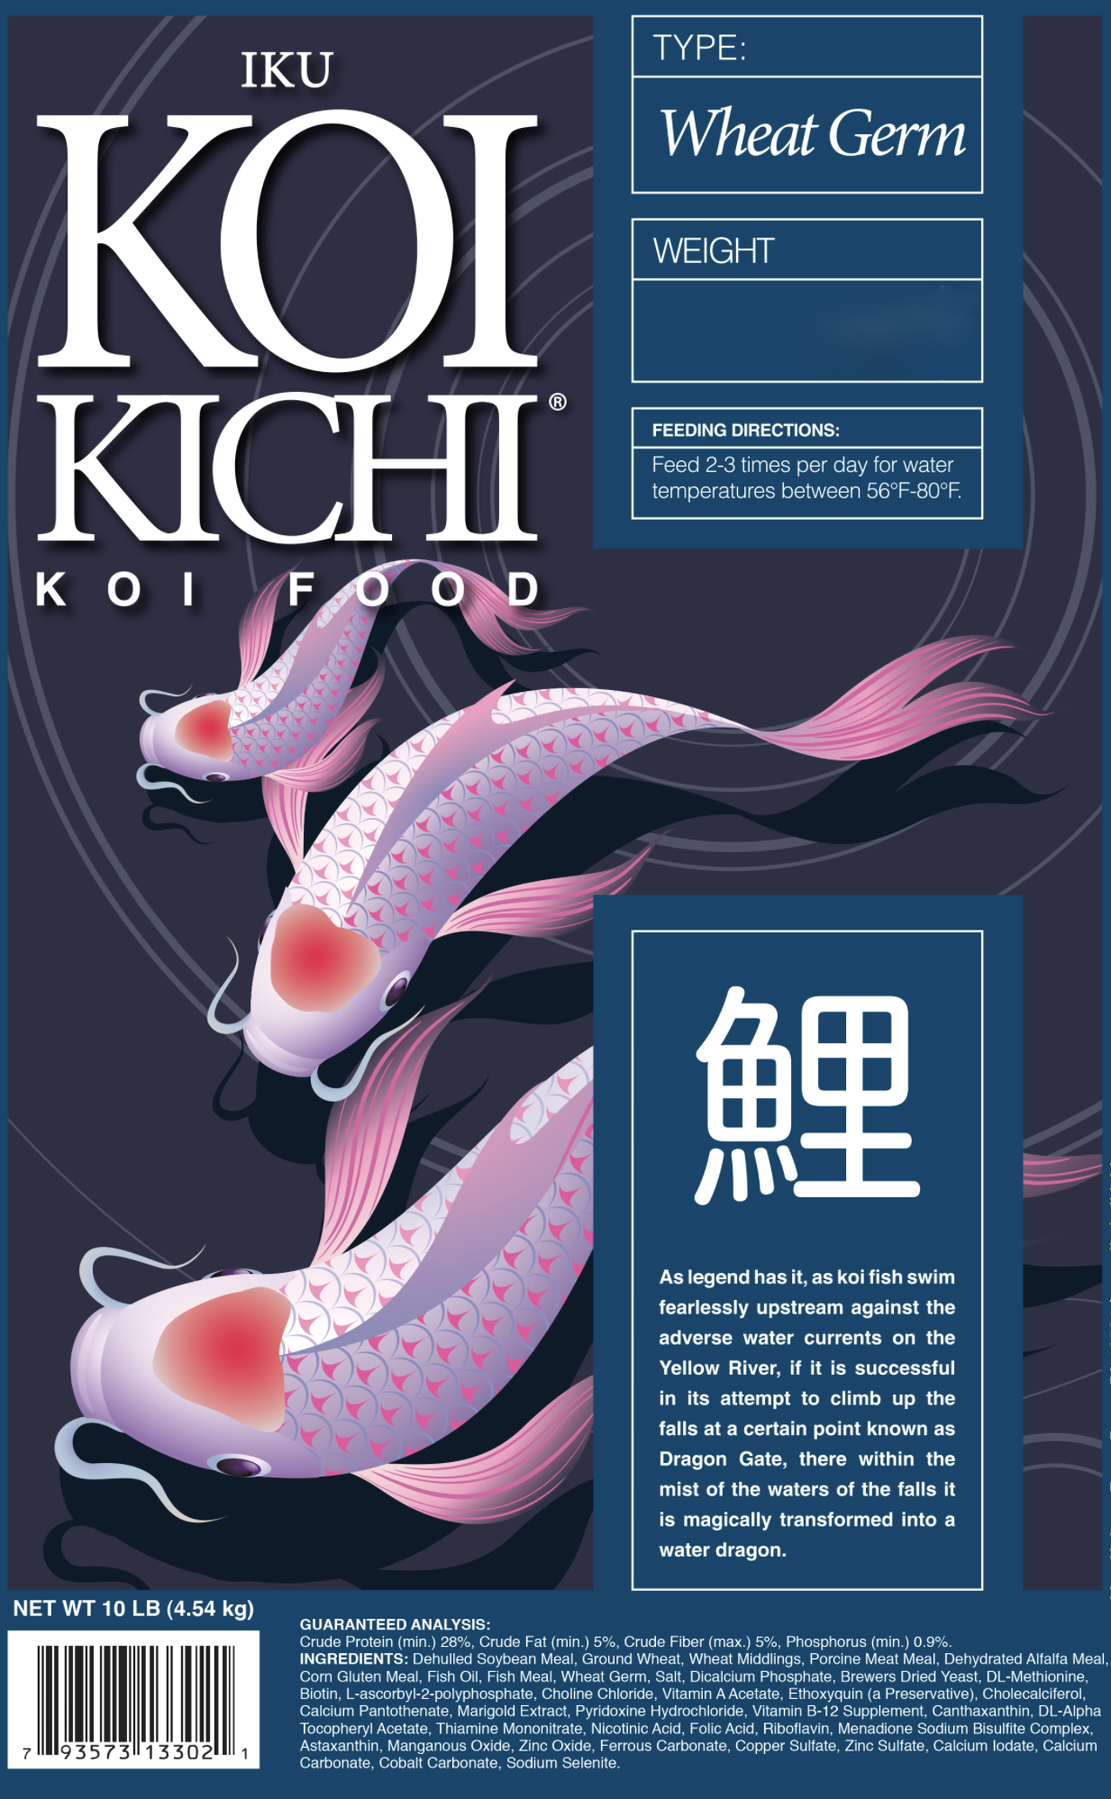 Iku Koi Kichi Wheat Germ Koi Fish Food - 16 lbs. (Bucket)